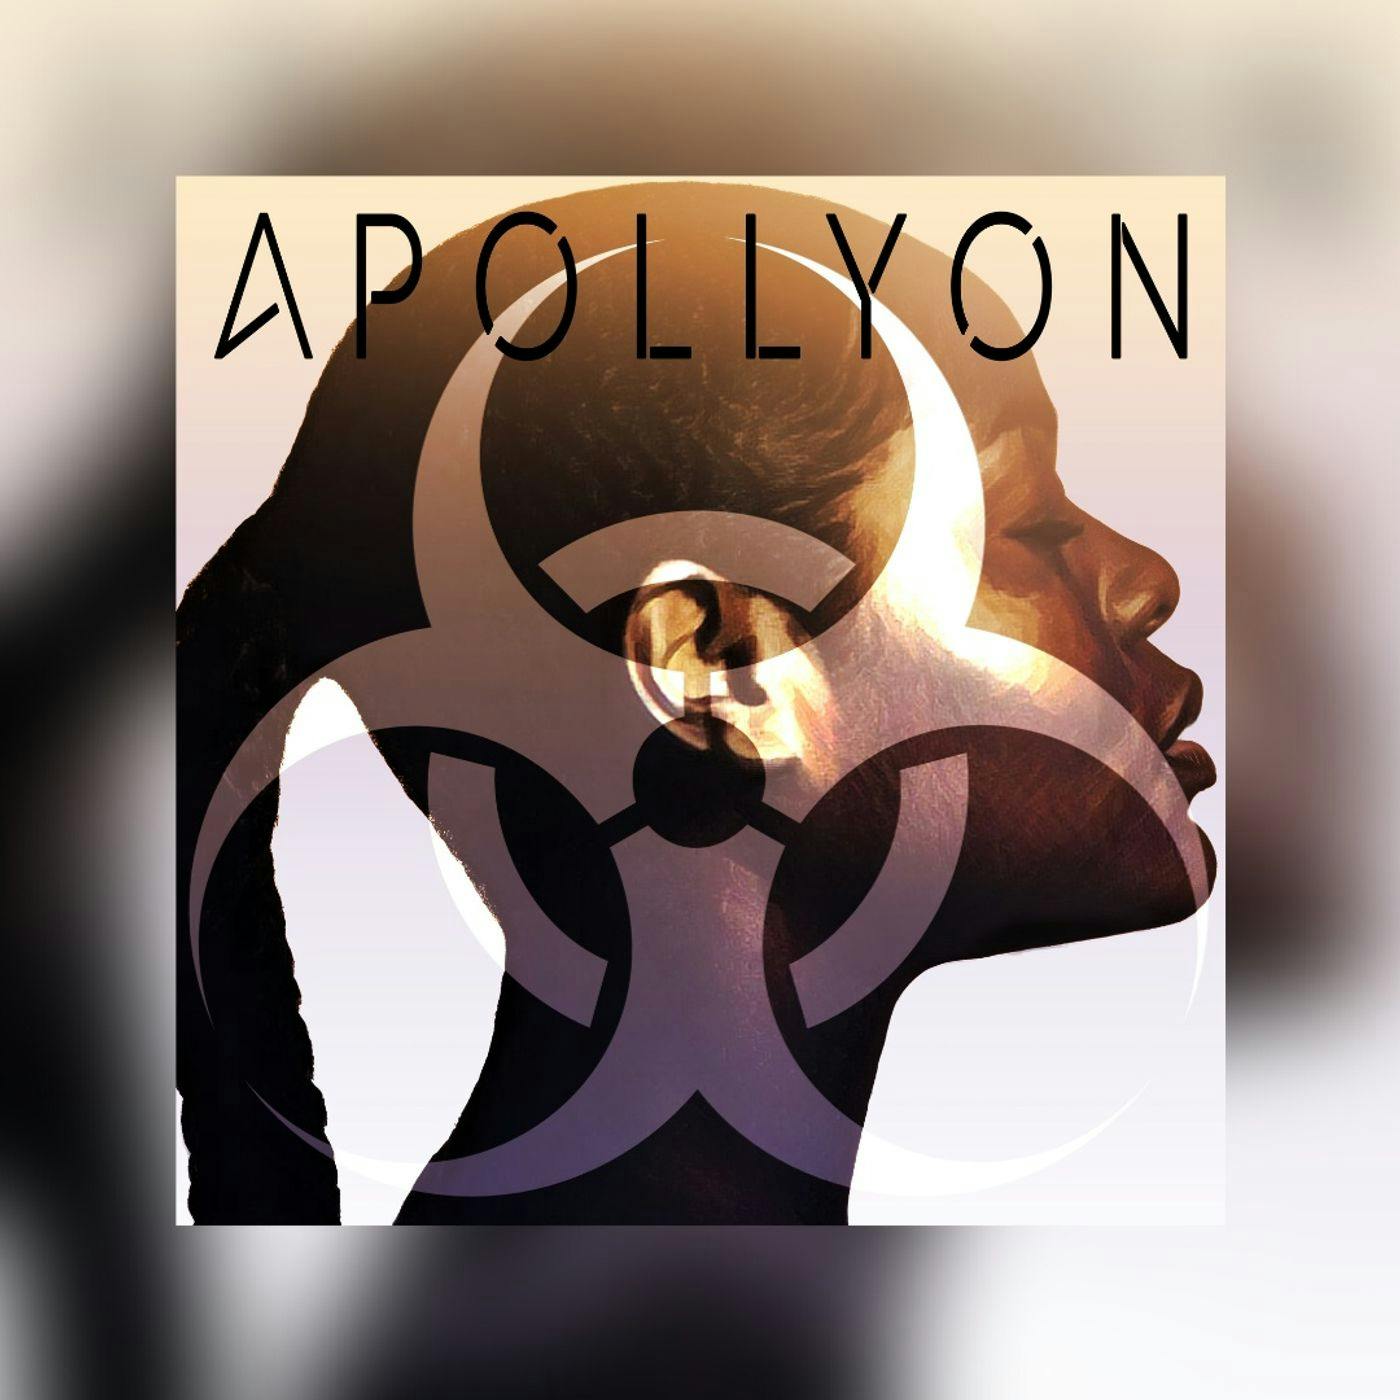 Introducing Apollyon